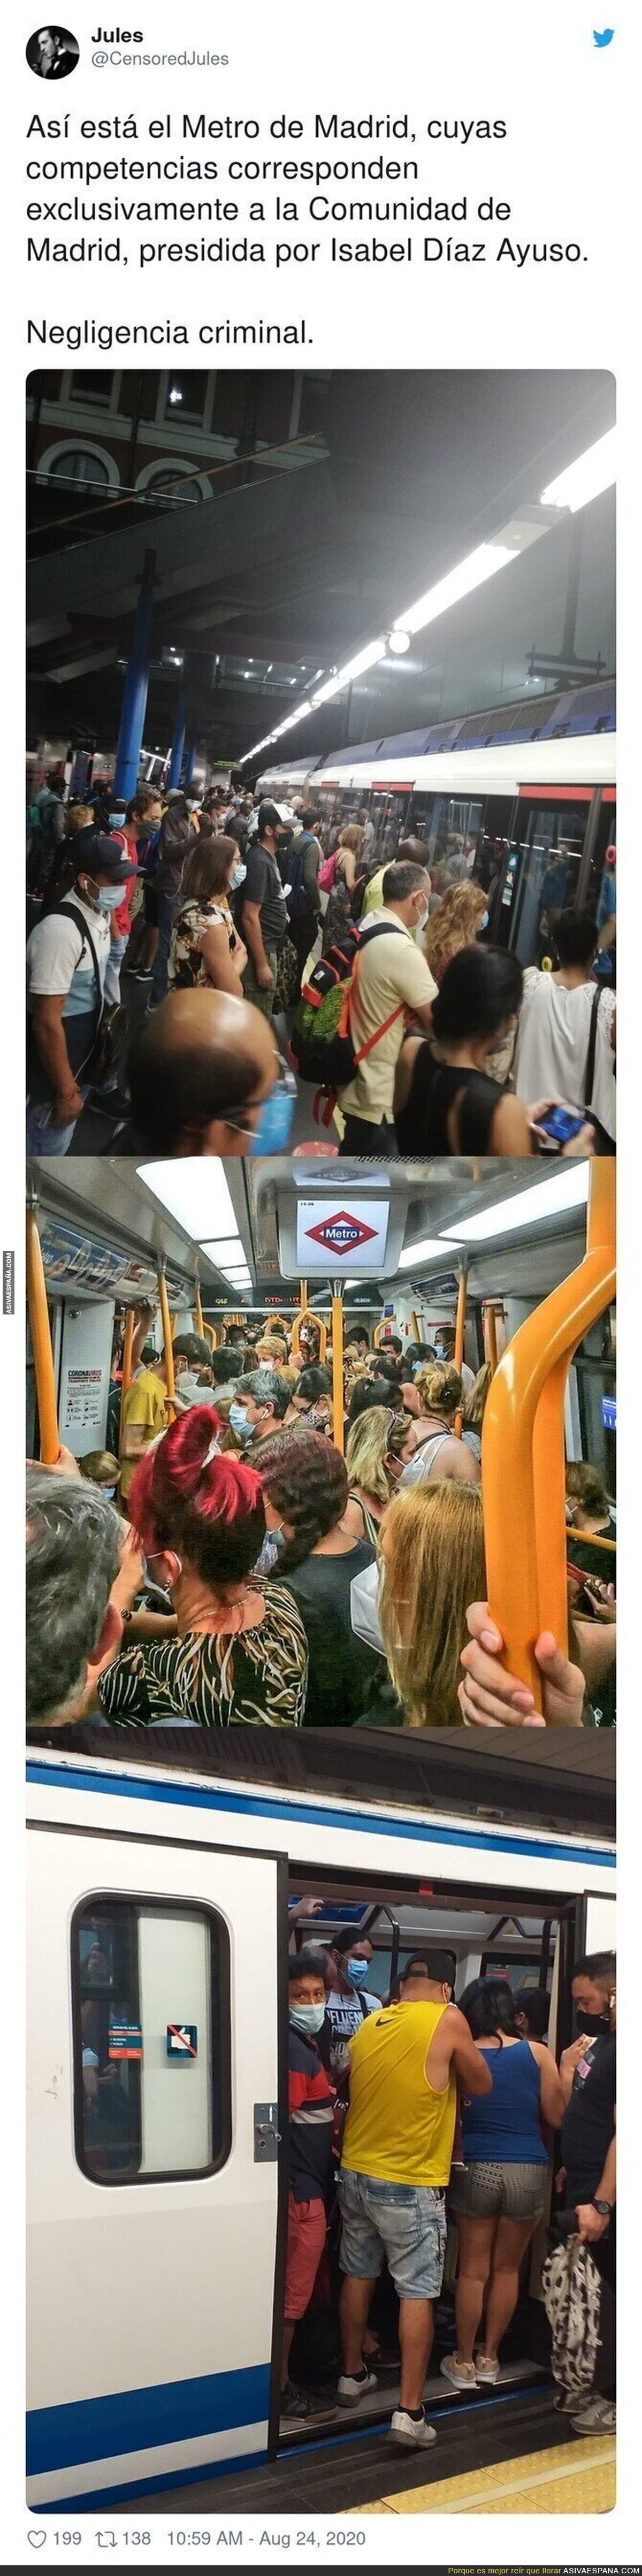 Queremos un cura en el metro por cada 100 viajeros